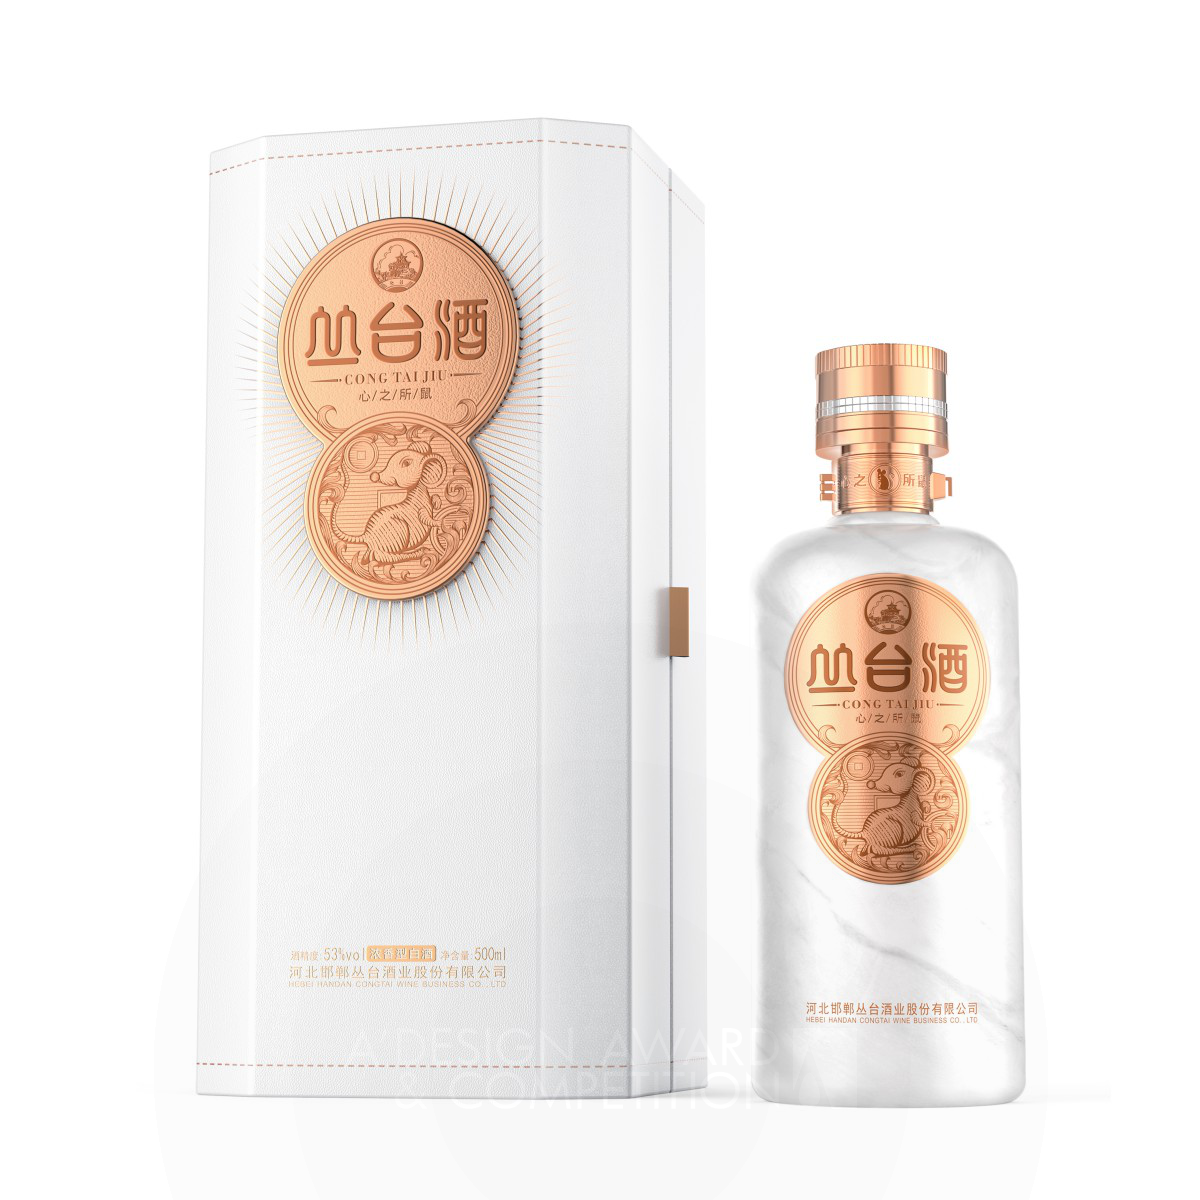 Cong Tai Baijiu Beverage by Wen Liu and Junyi Xiao Silver Packaging Design Award Winner 2020 